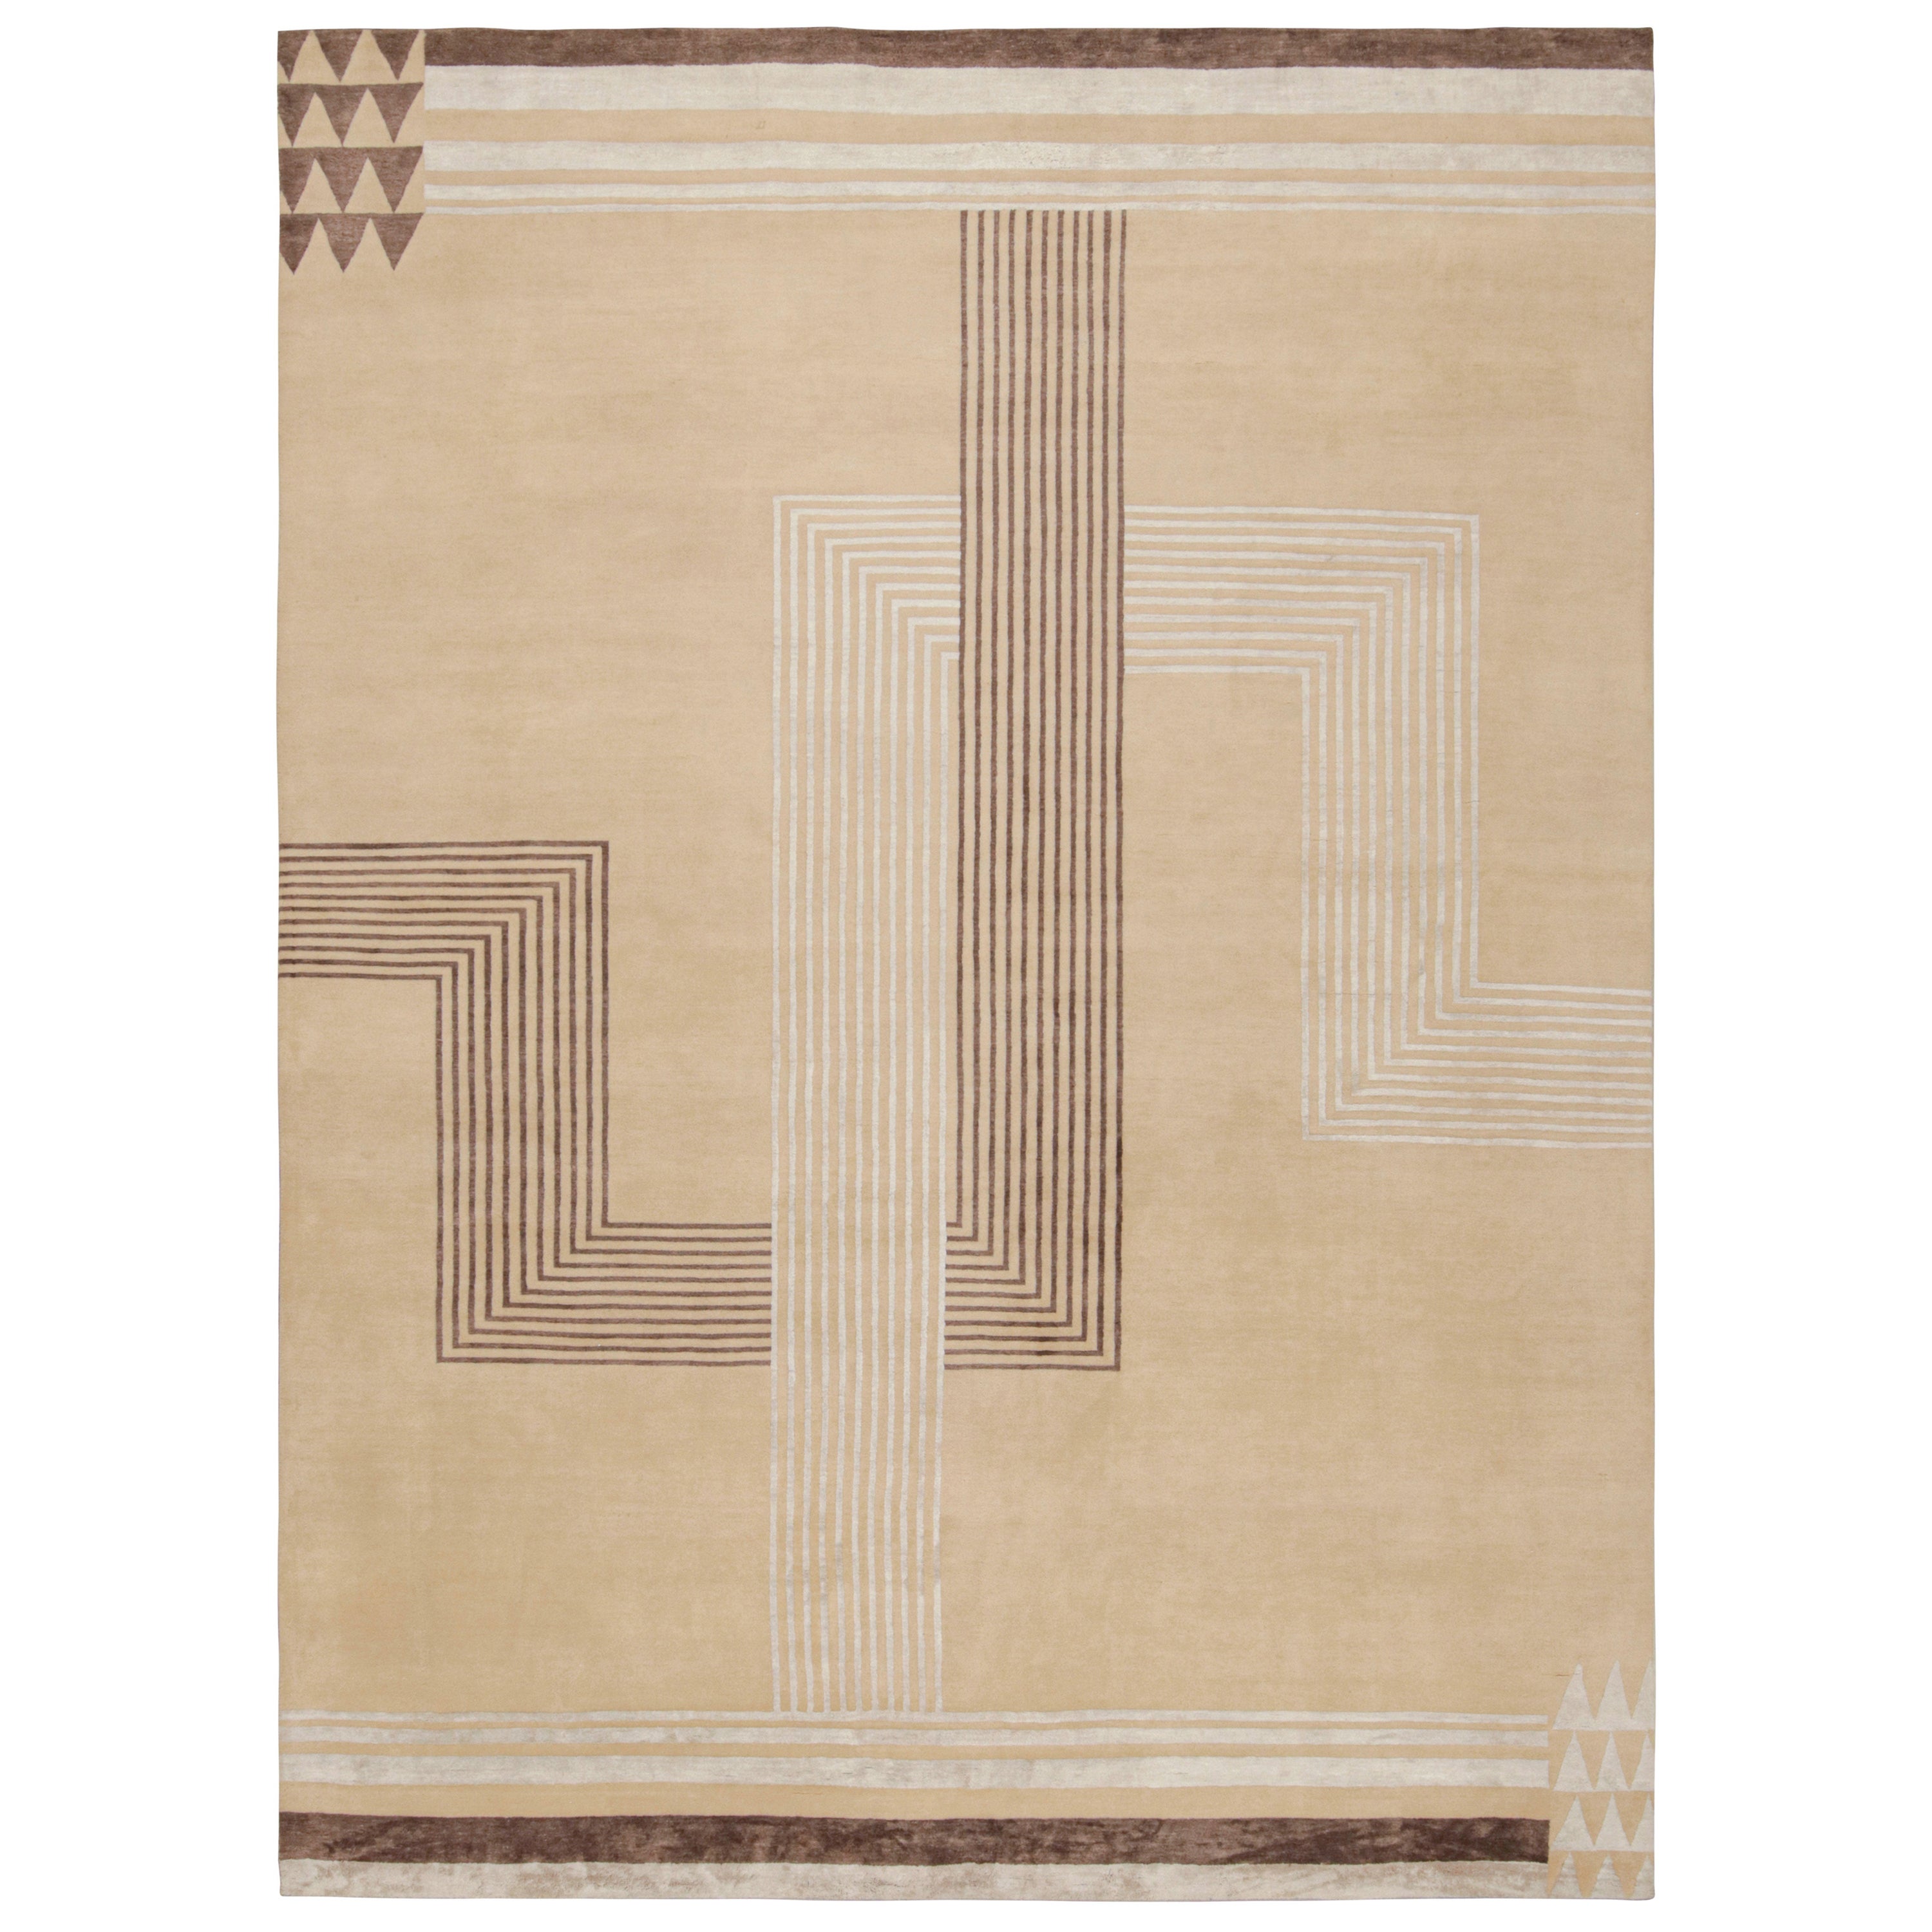 Rug & Kilim's French Art Deco Rug with Beige-Brown Patterns (tapis de style Art déco français avec des motifs beiges et bruns)